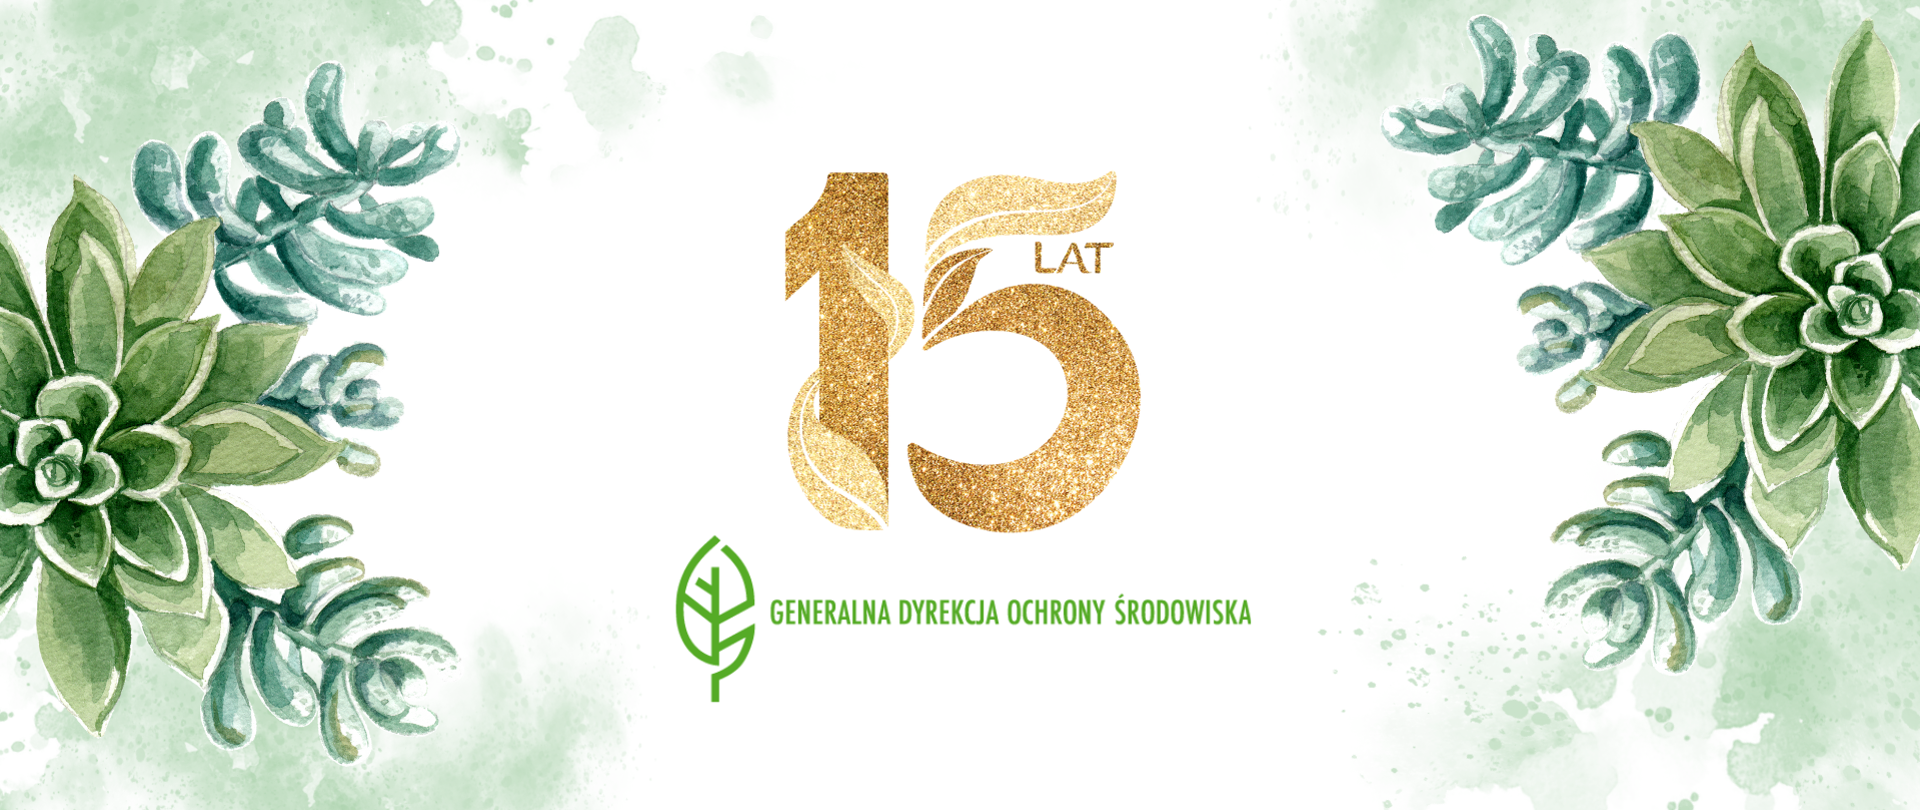 Na grafice w środkowej części złoty napis: "15 lat" pod tym napisem logotyp GDOŚ - zielony listek i napis Generalna Dyrekcja Ochrony Środowiska. Po lewej i prawej stronie taki sam motyw roślinny, rysunek przedstawiający zielone rośliny. 